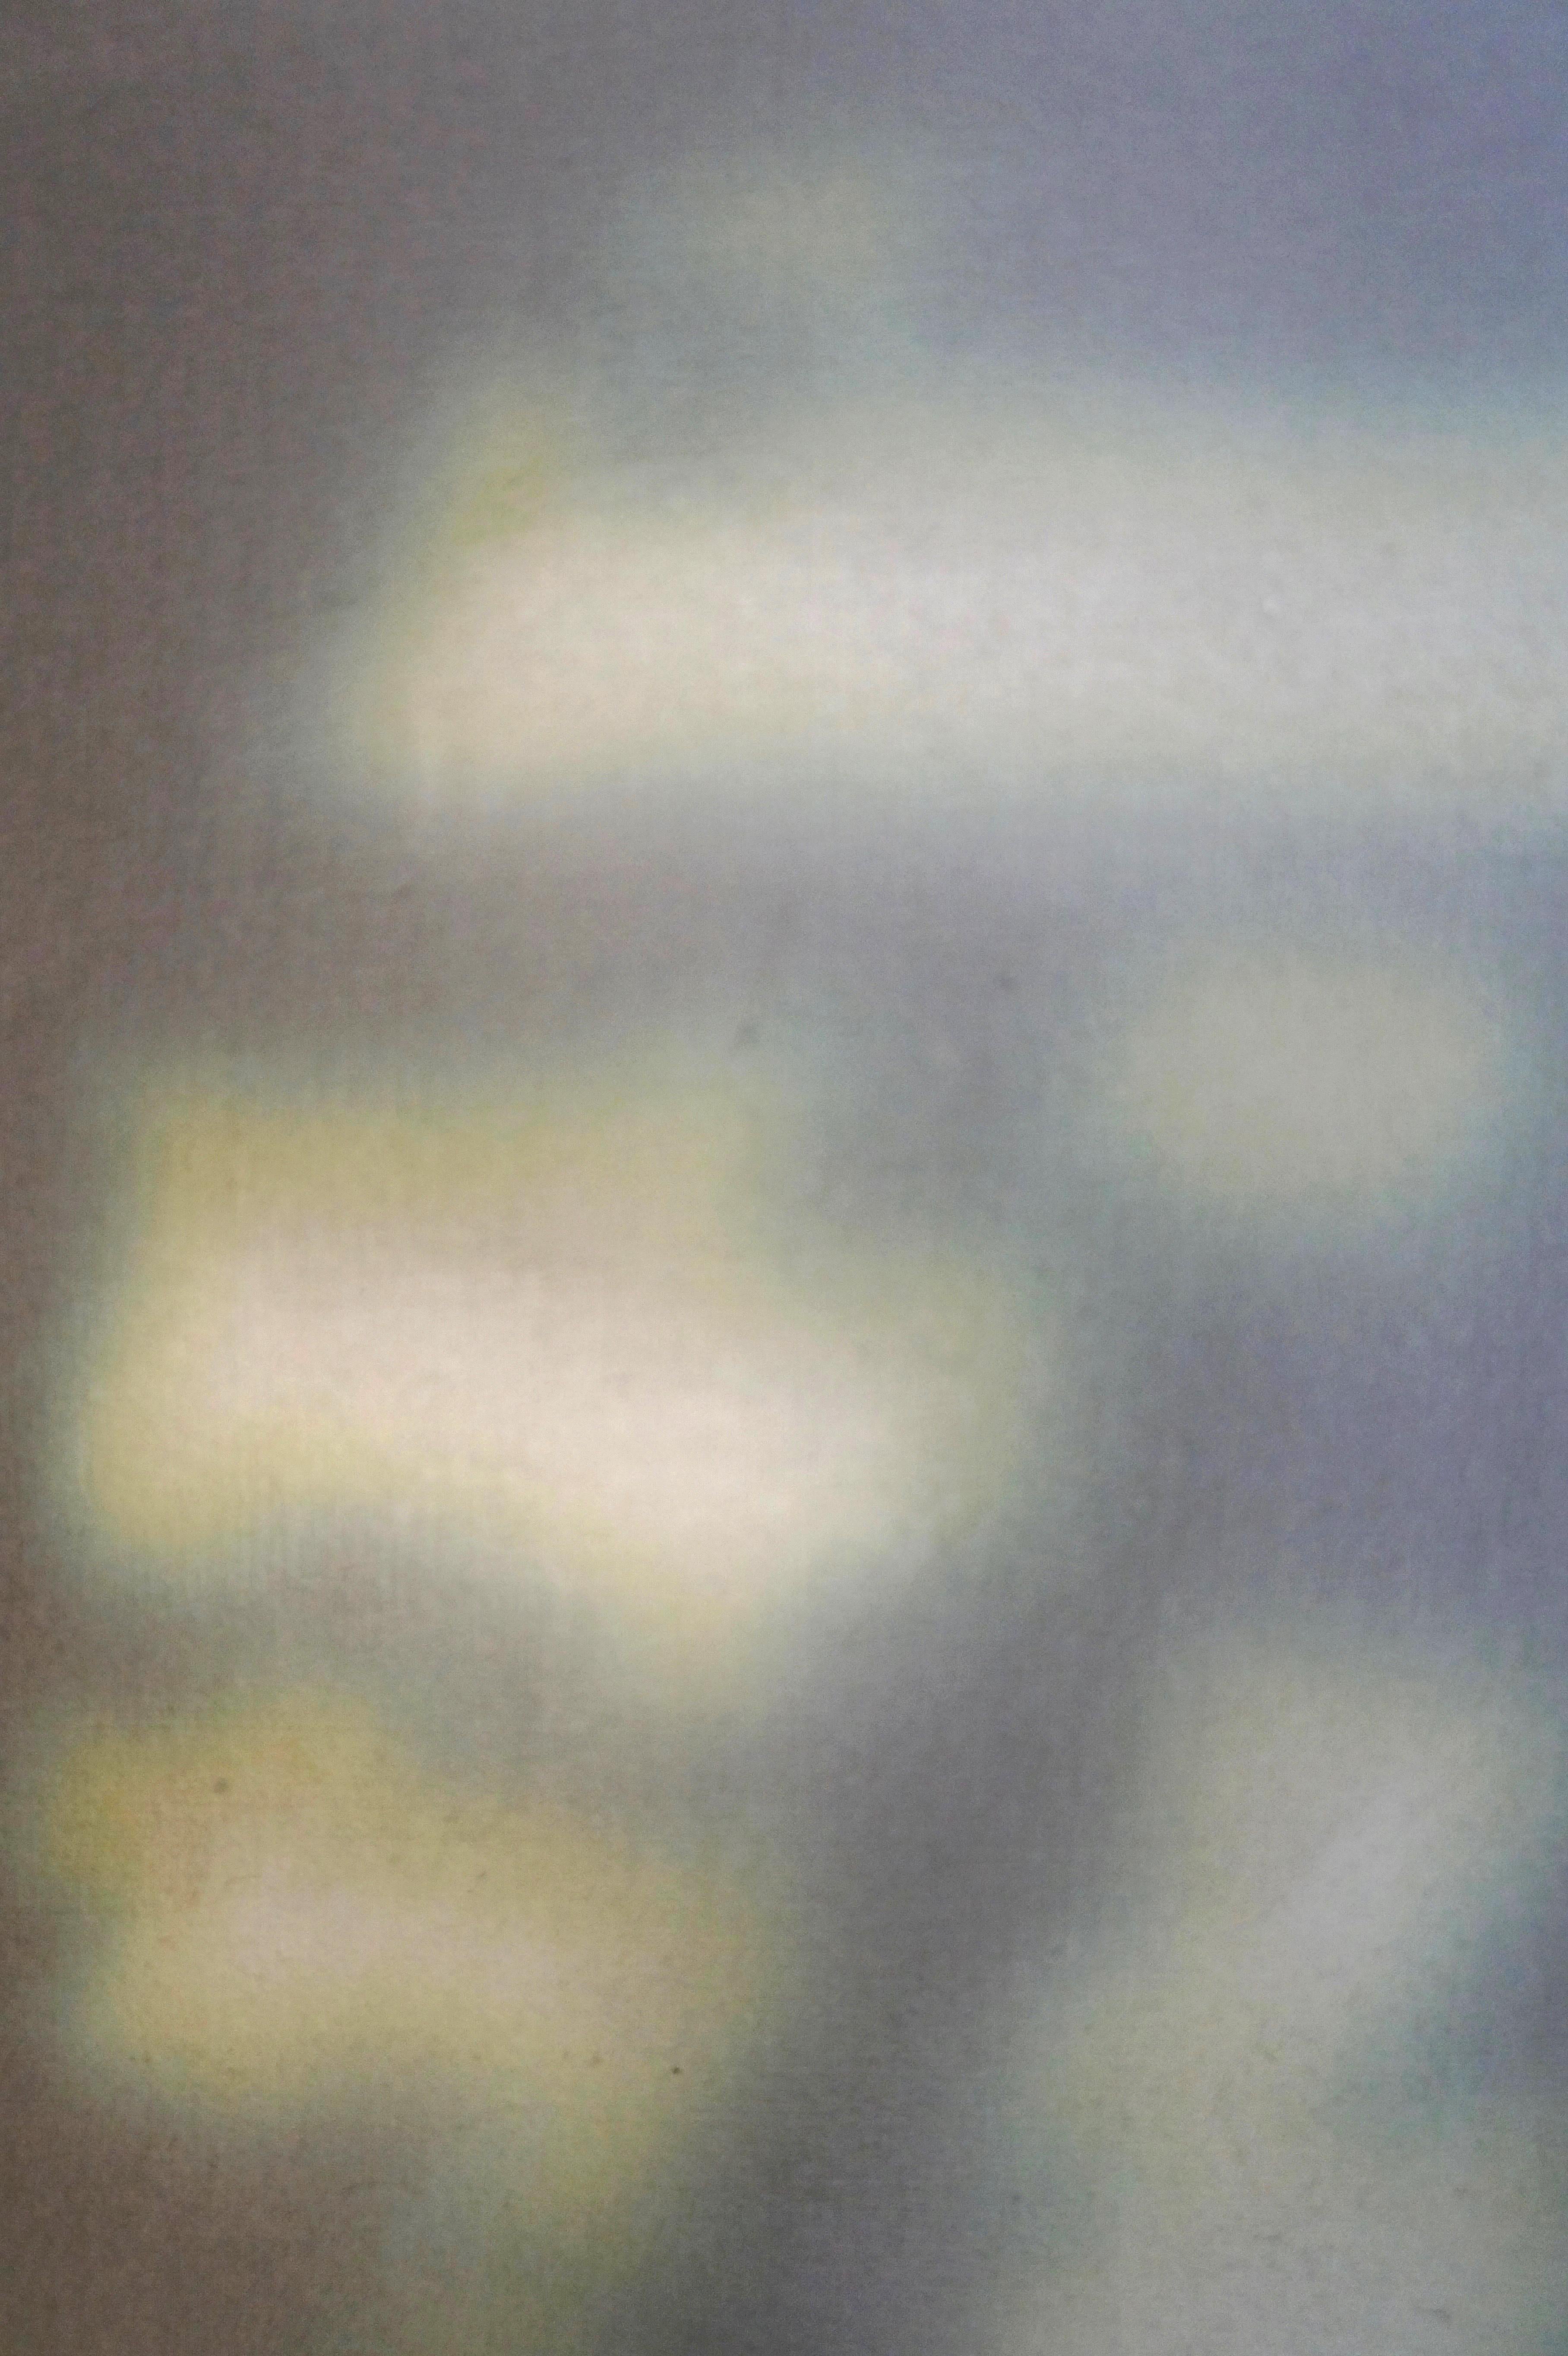 THE LONG SUMMER - Zeitgenössisches abstraktes Gemälde in Mischtechnik, Grün, Licht  (Grau), Abstract Painting, von Heather Hartman